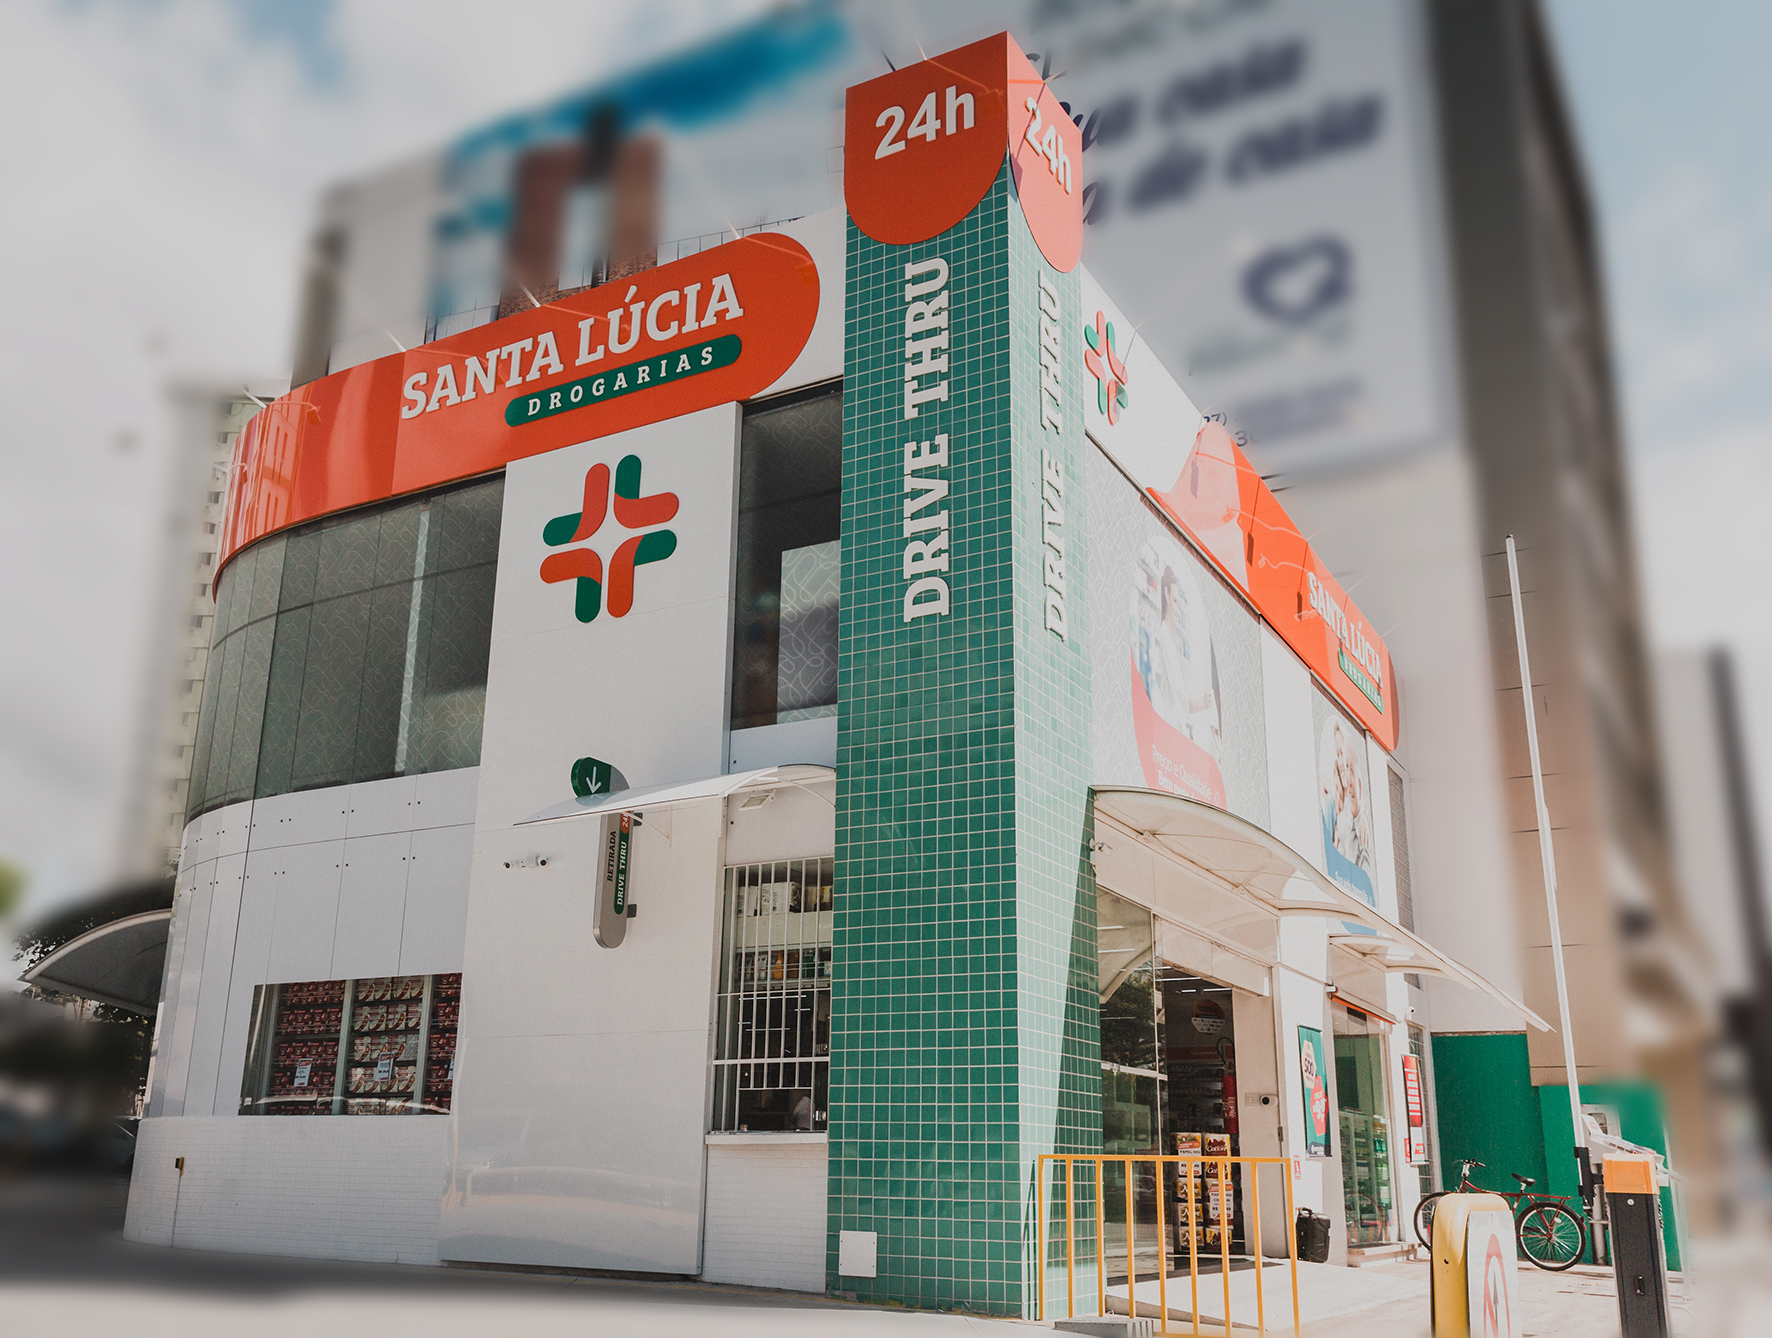 Com 45 anos de história, a rede de farmárcias Santa Lúcia desenvolveu uma loja virtual exclusiva com entregas express para o Espírito Santo